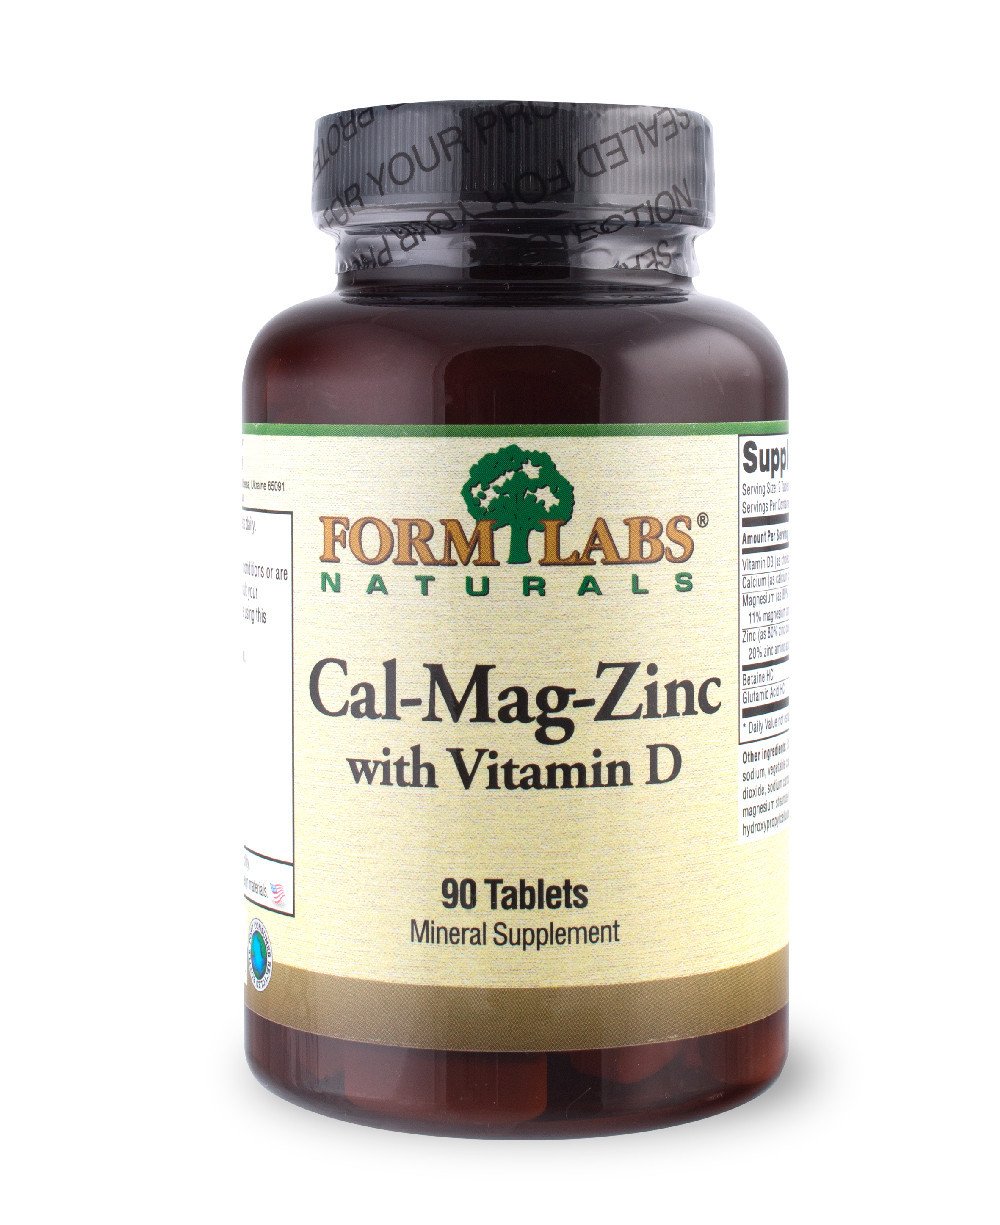 Cal-Mag-Zinc+Vitamin D, 180 ml, Form Labs Naturals. Vitamins and minerals. General Health Immunity enhancement 